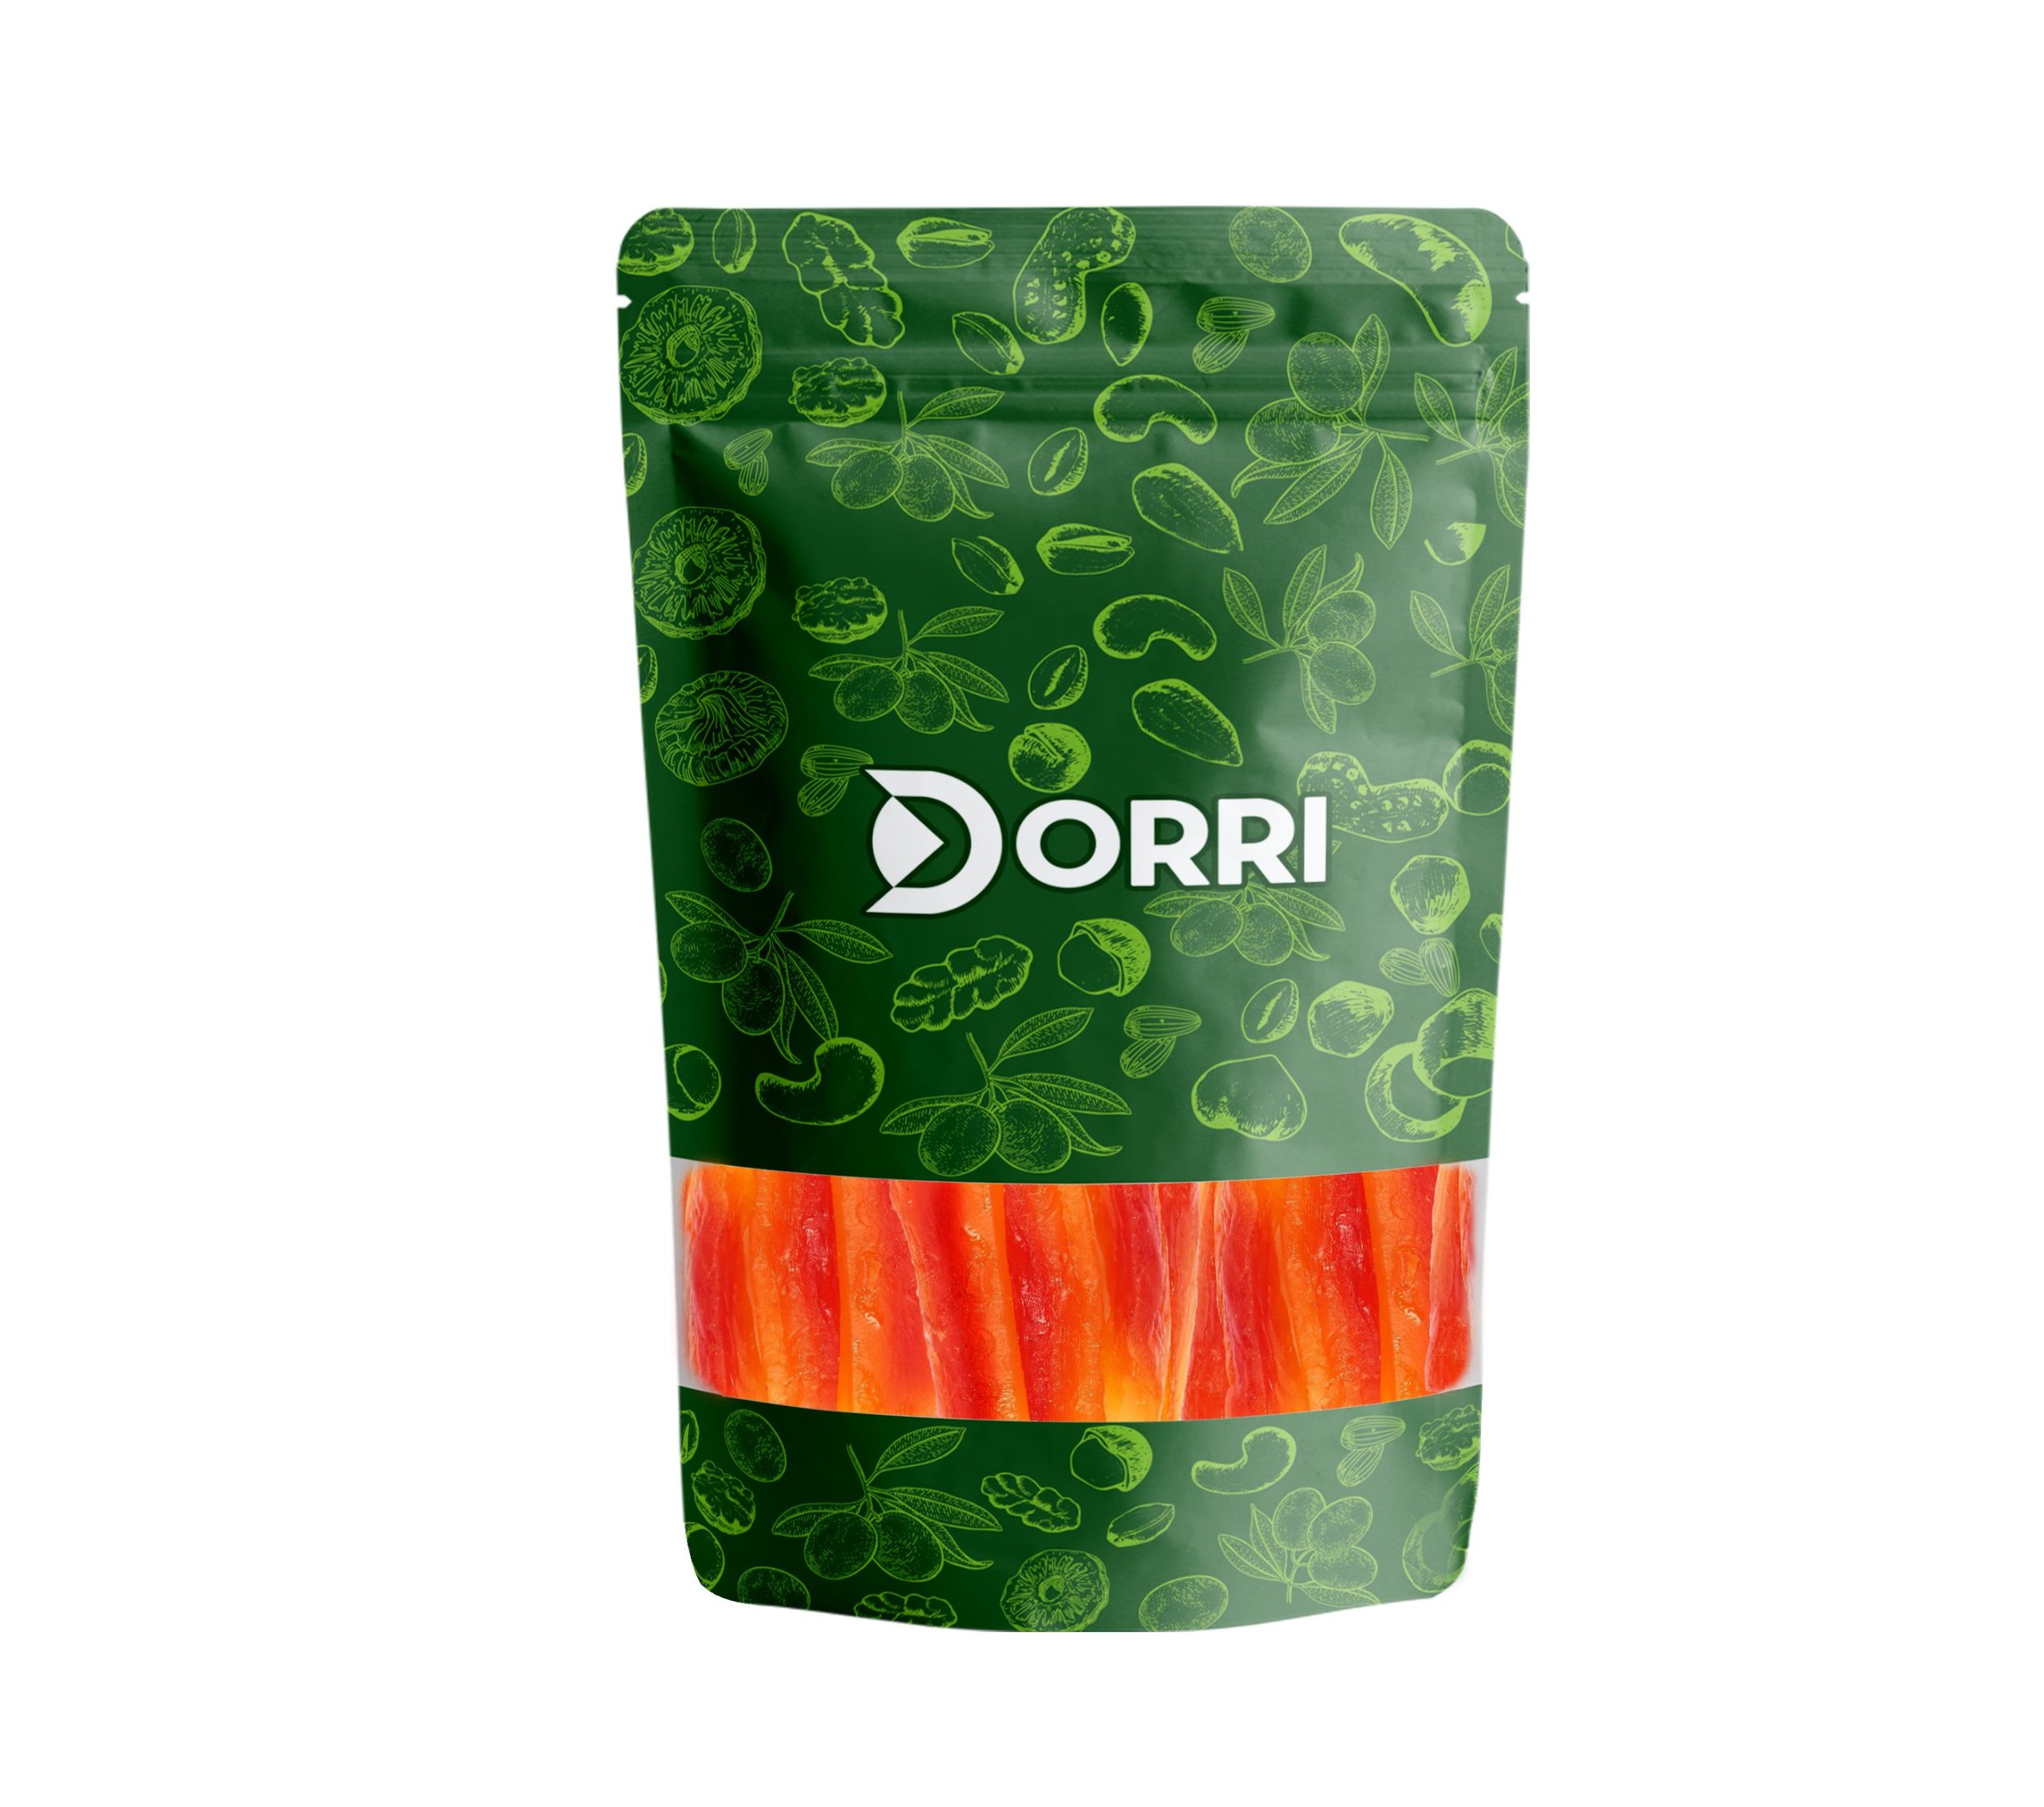 Dorri - Dried Papaya